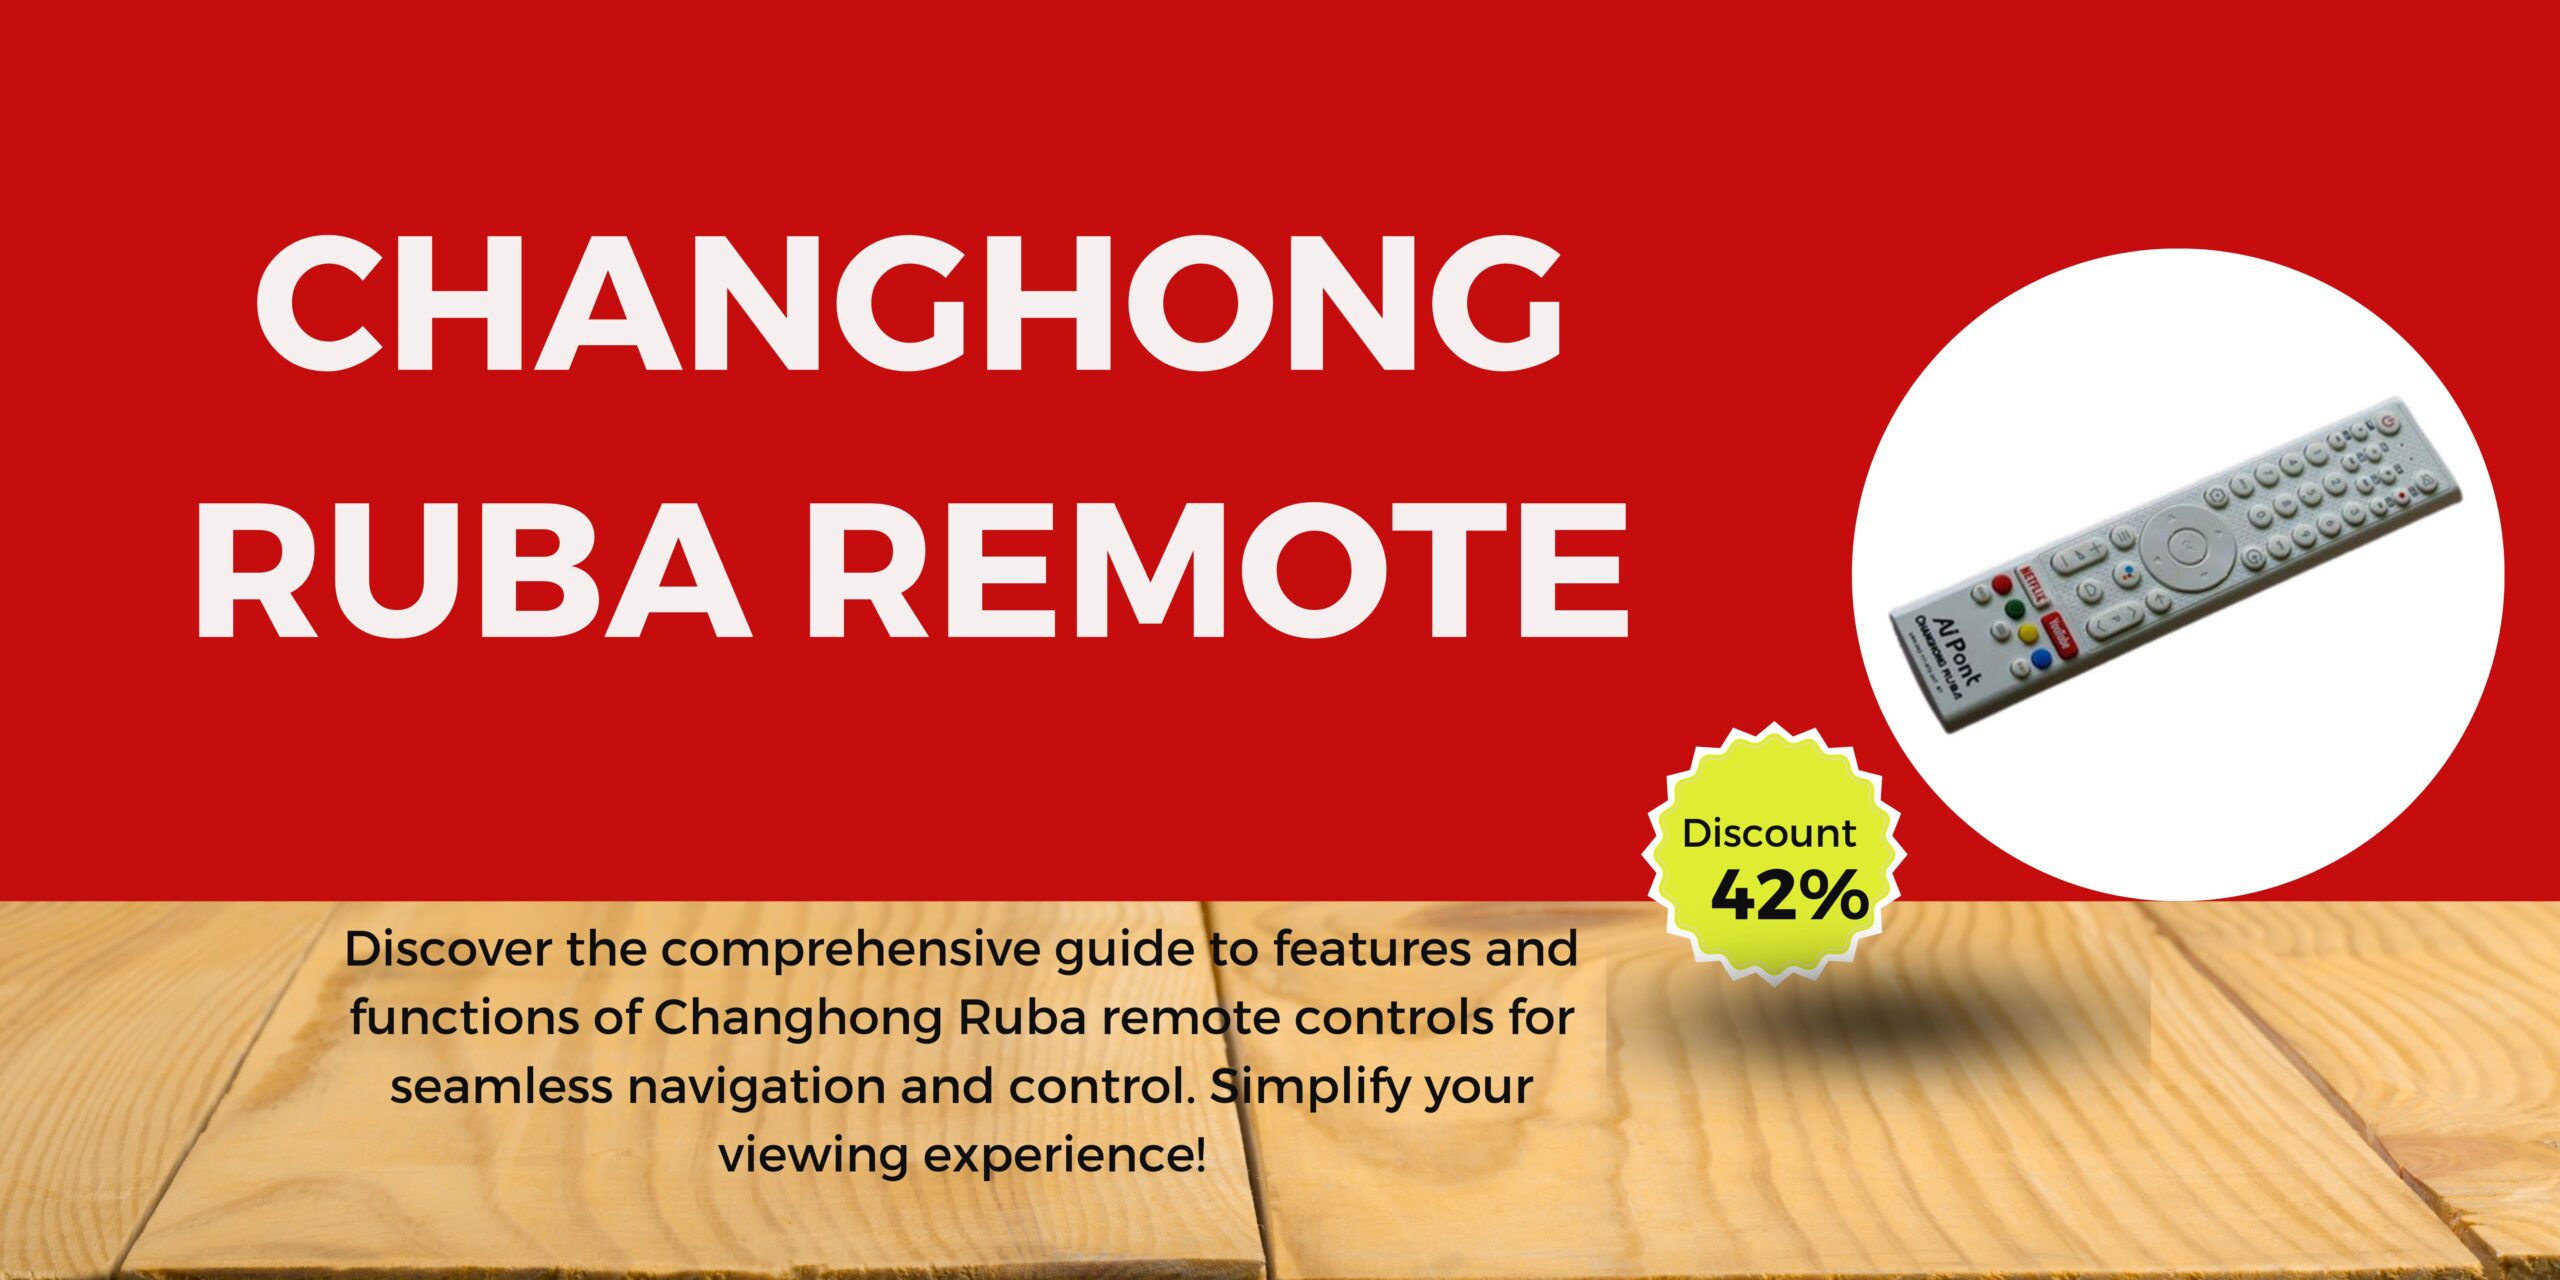 Changhong Ruba Remote